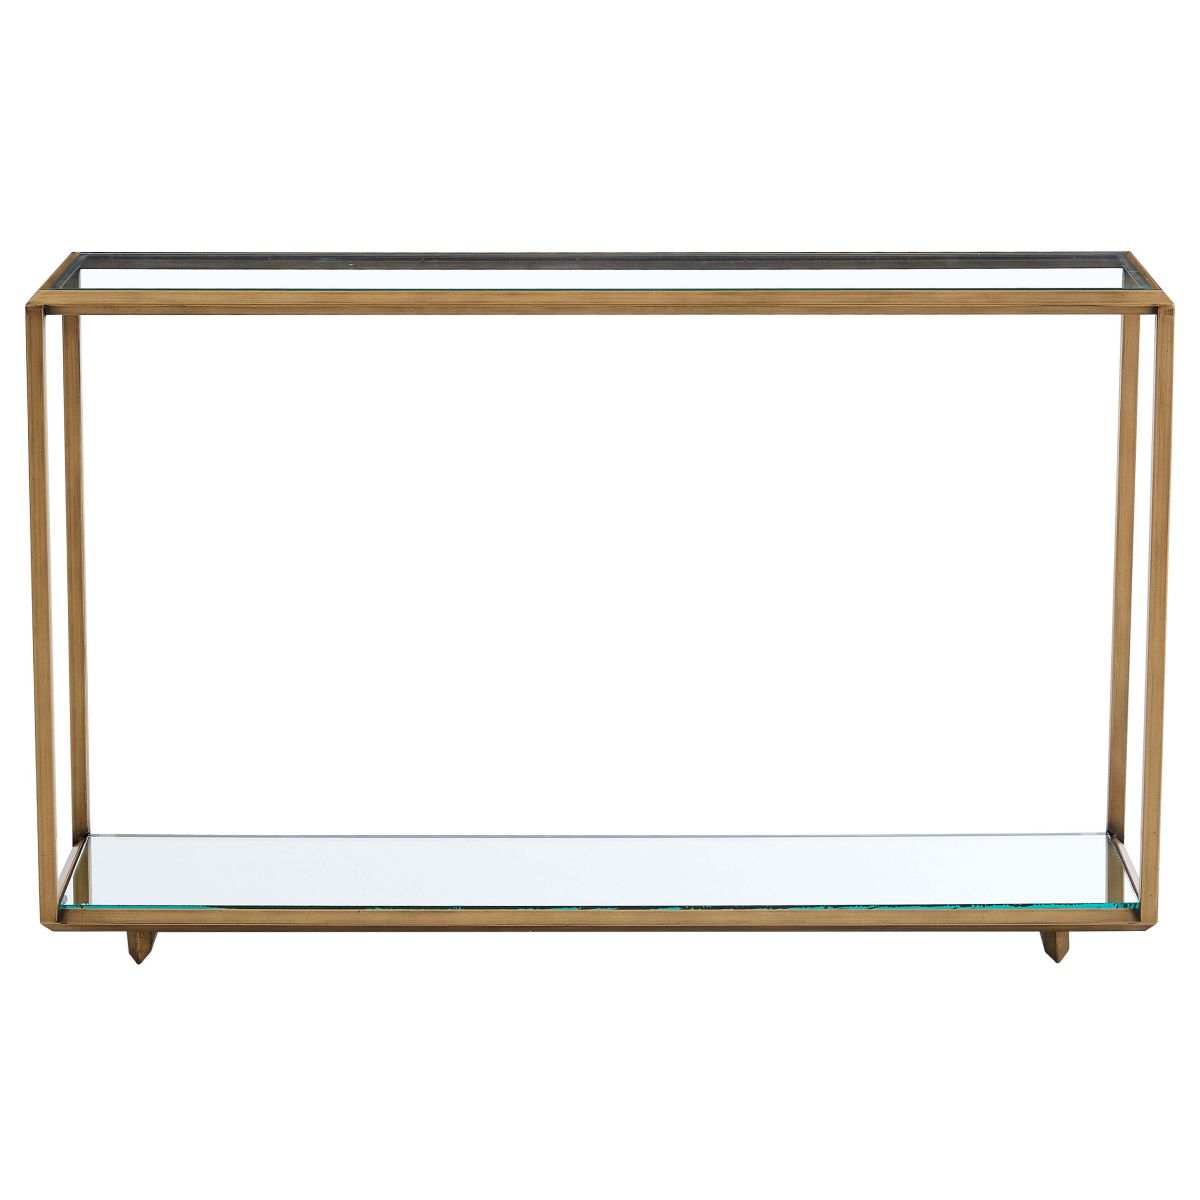 Safavieh Couture Florabella Mirrored Console Table - Bronze